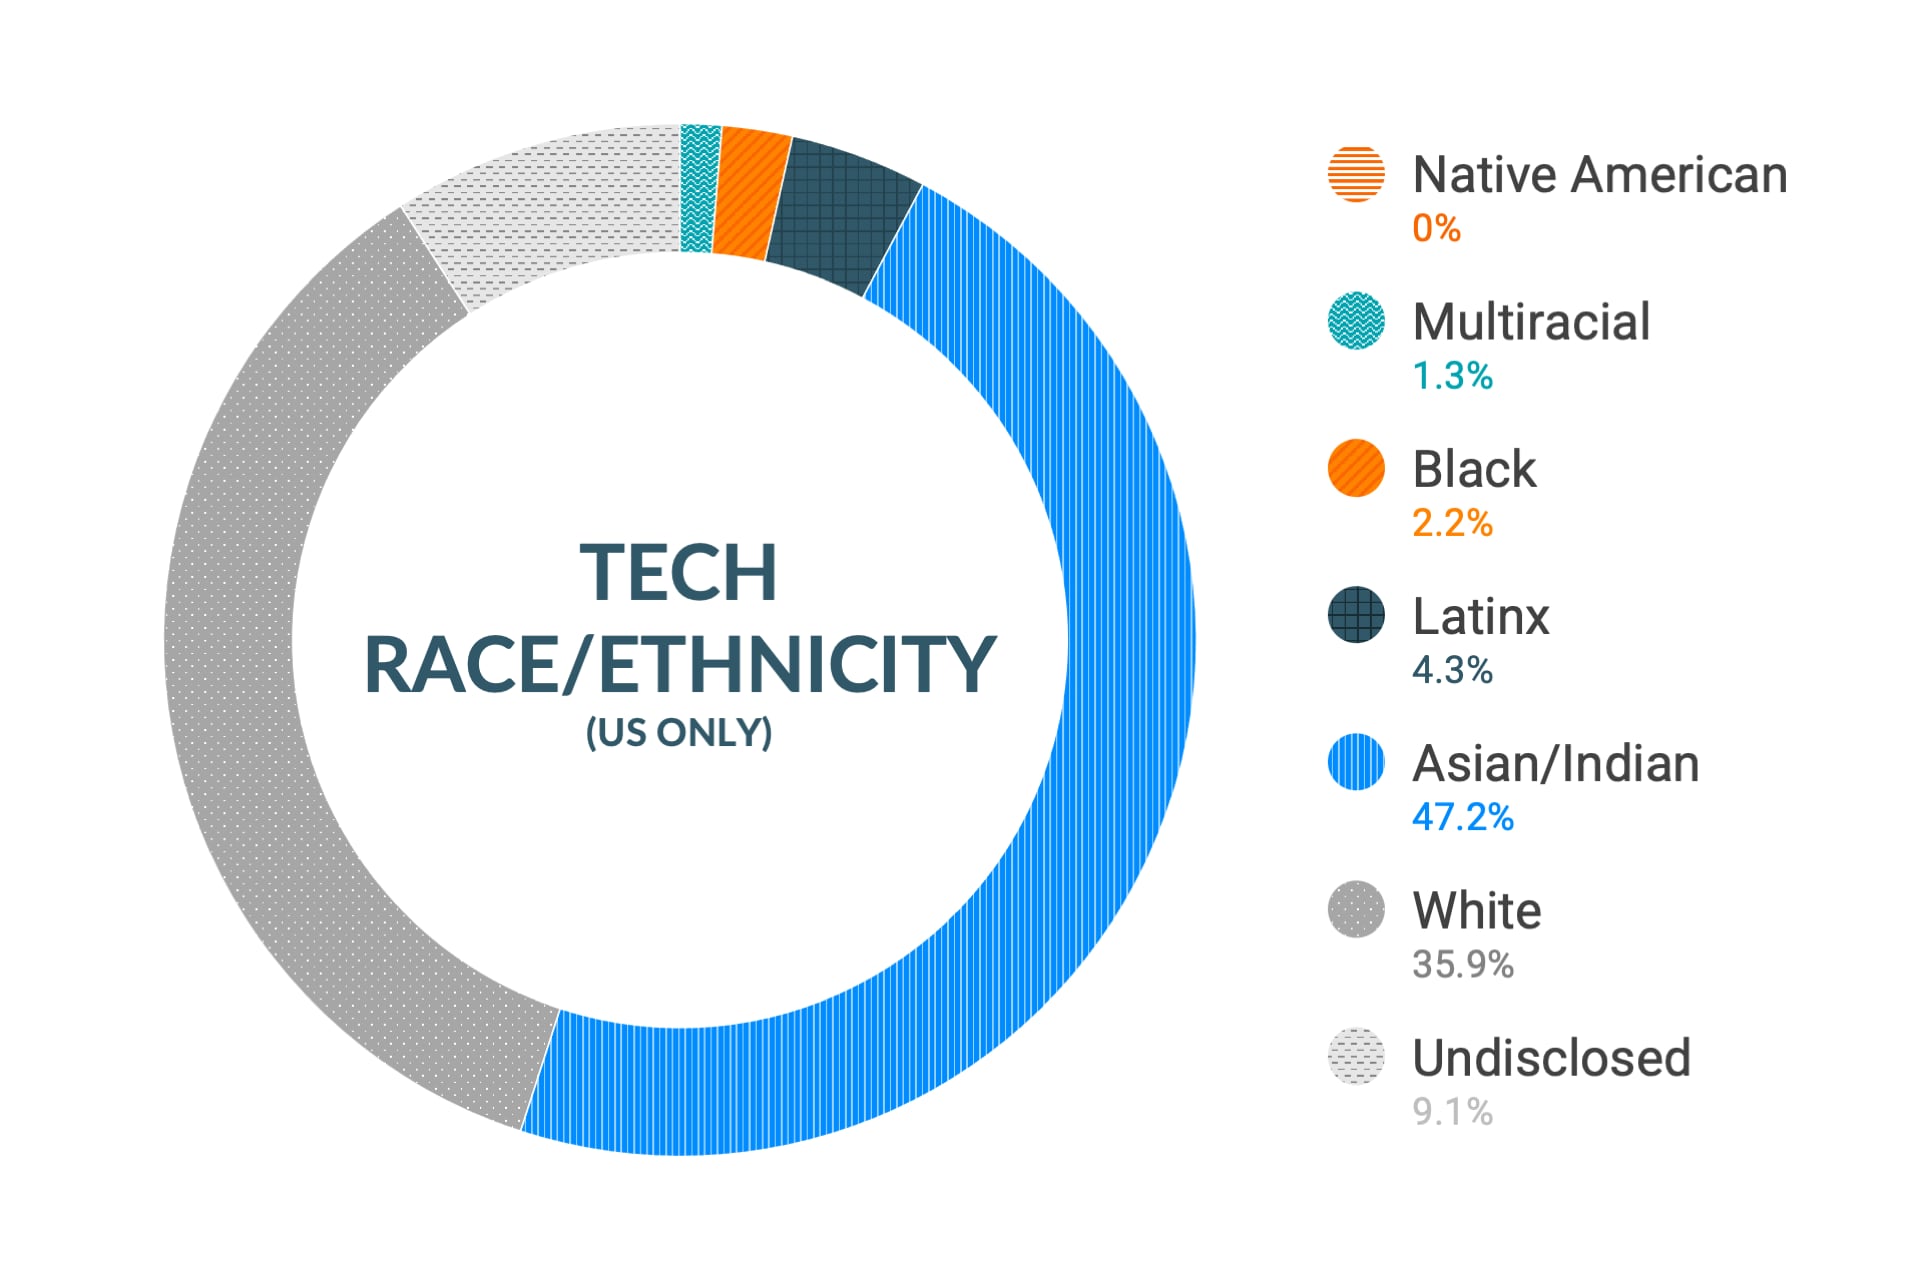 Dane firmy Cloudera dotyczące różnorodności i integracji dla rasy i pochodzenia etnicznego wg stanowisk technicznych w Stanach Zjednoczonych: natywni Amerykanie 0,4%, osoby wielorasowe 1,1%, osoby czarnoskóre 2,1%, latynosi 1,4%, azjaci i hindusi 45,5%, biali 25,9%, nieujawnione 23,6%